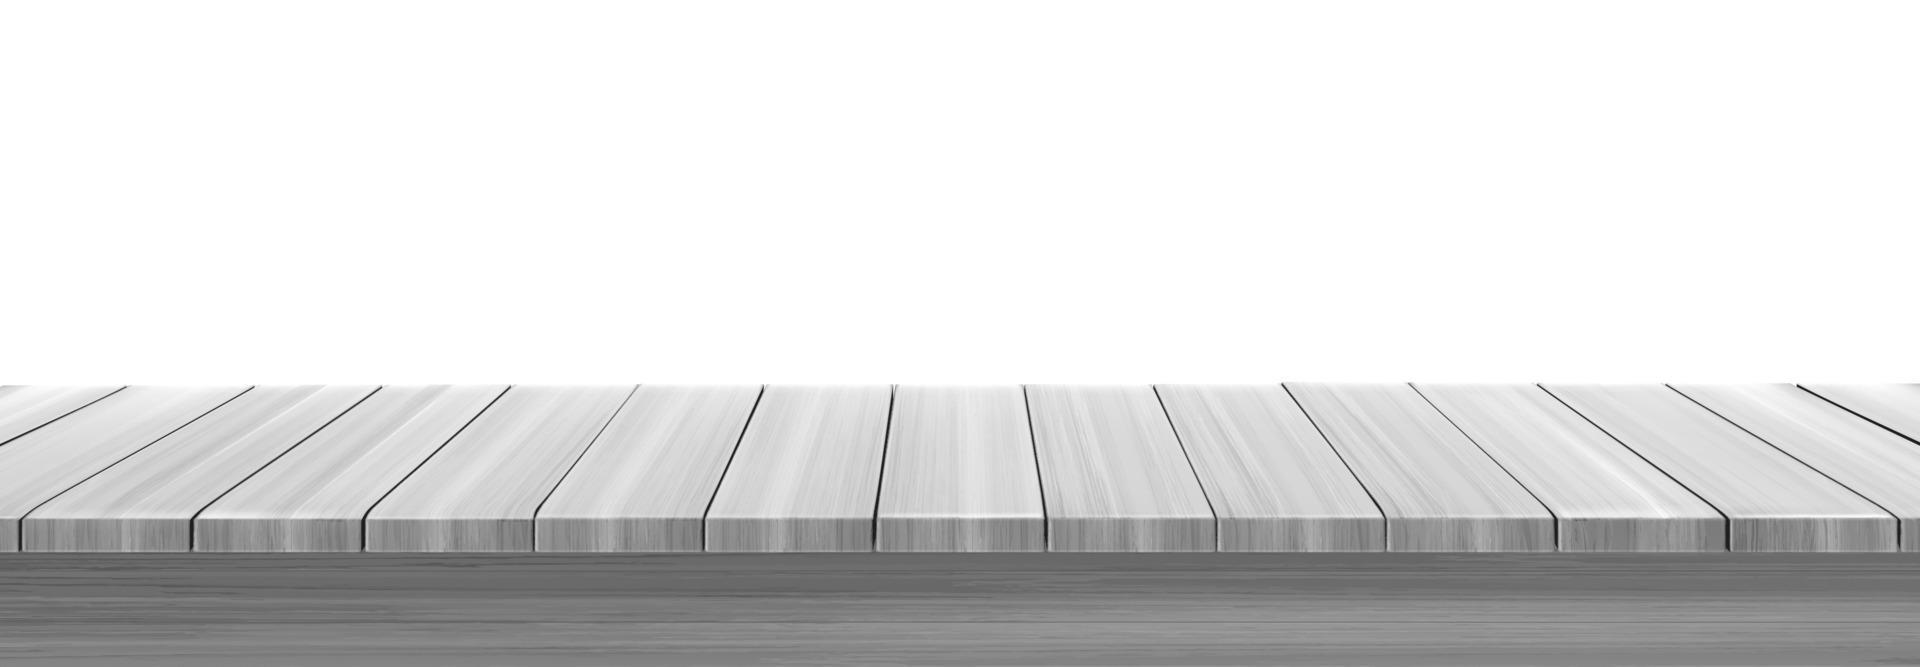 tablero de madera, barra de bar, escritorio o estante vector